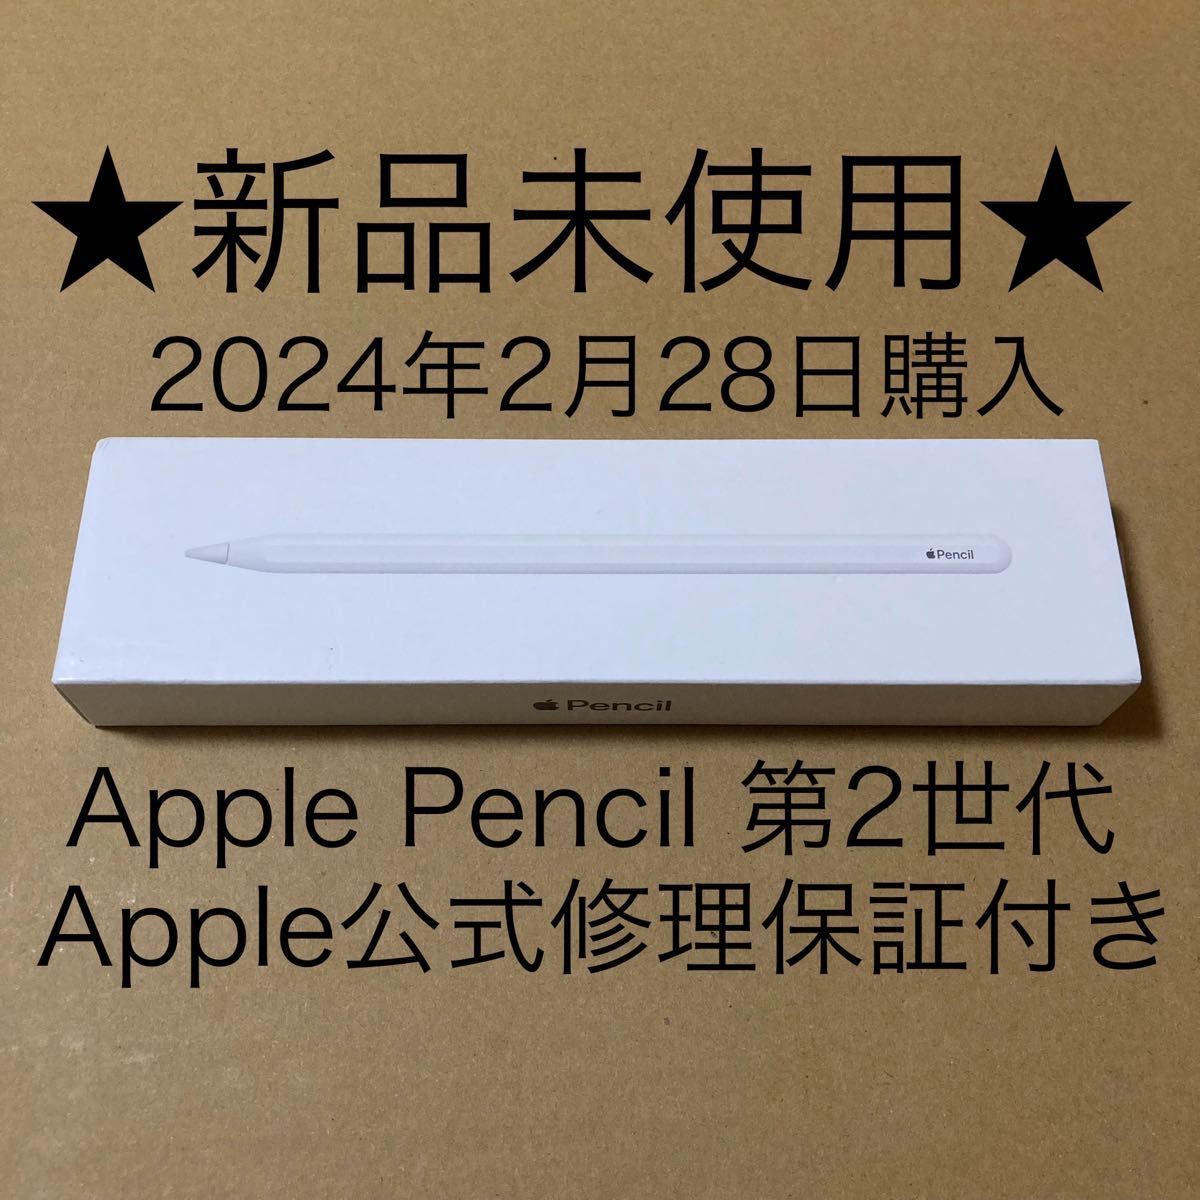 新品未使用・純正品 Apple Pencil アップルペンシル 第2世代 (Apple